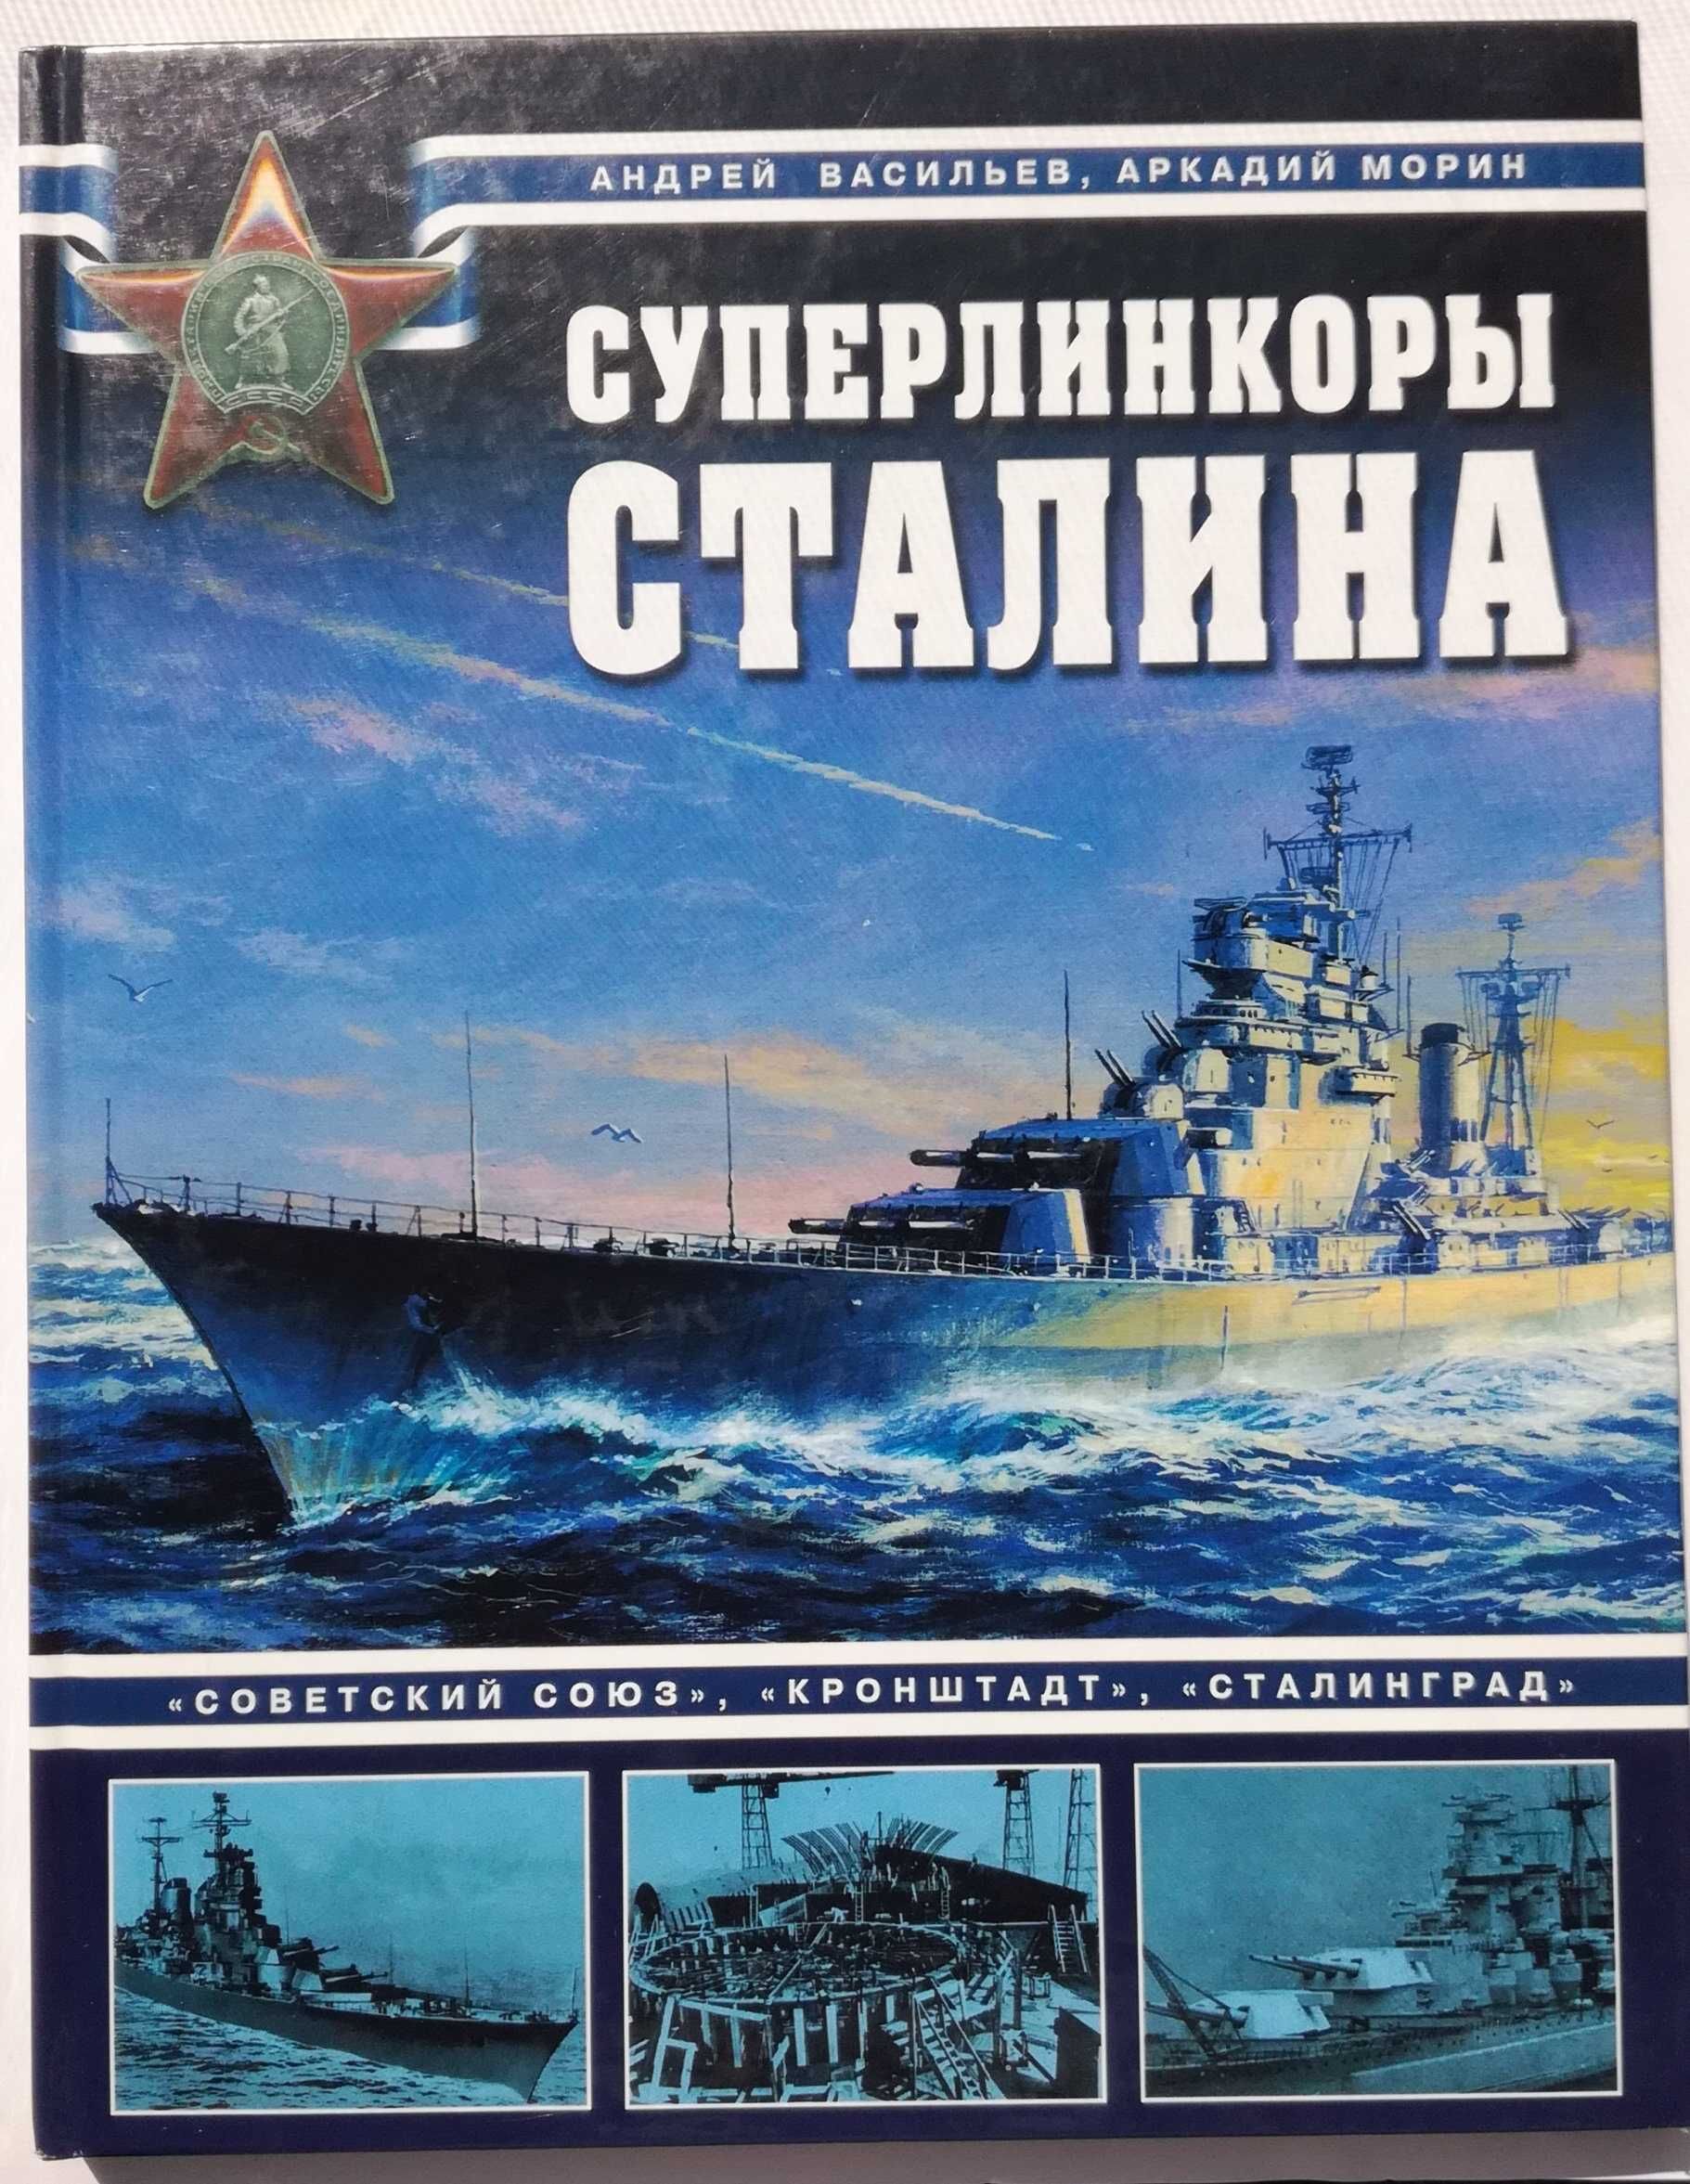 Морская кампания 2021 / Война на море  Військово-морський флот історія